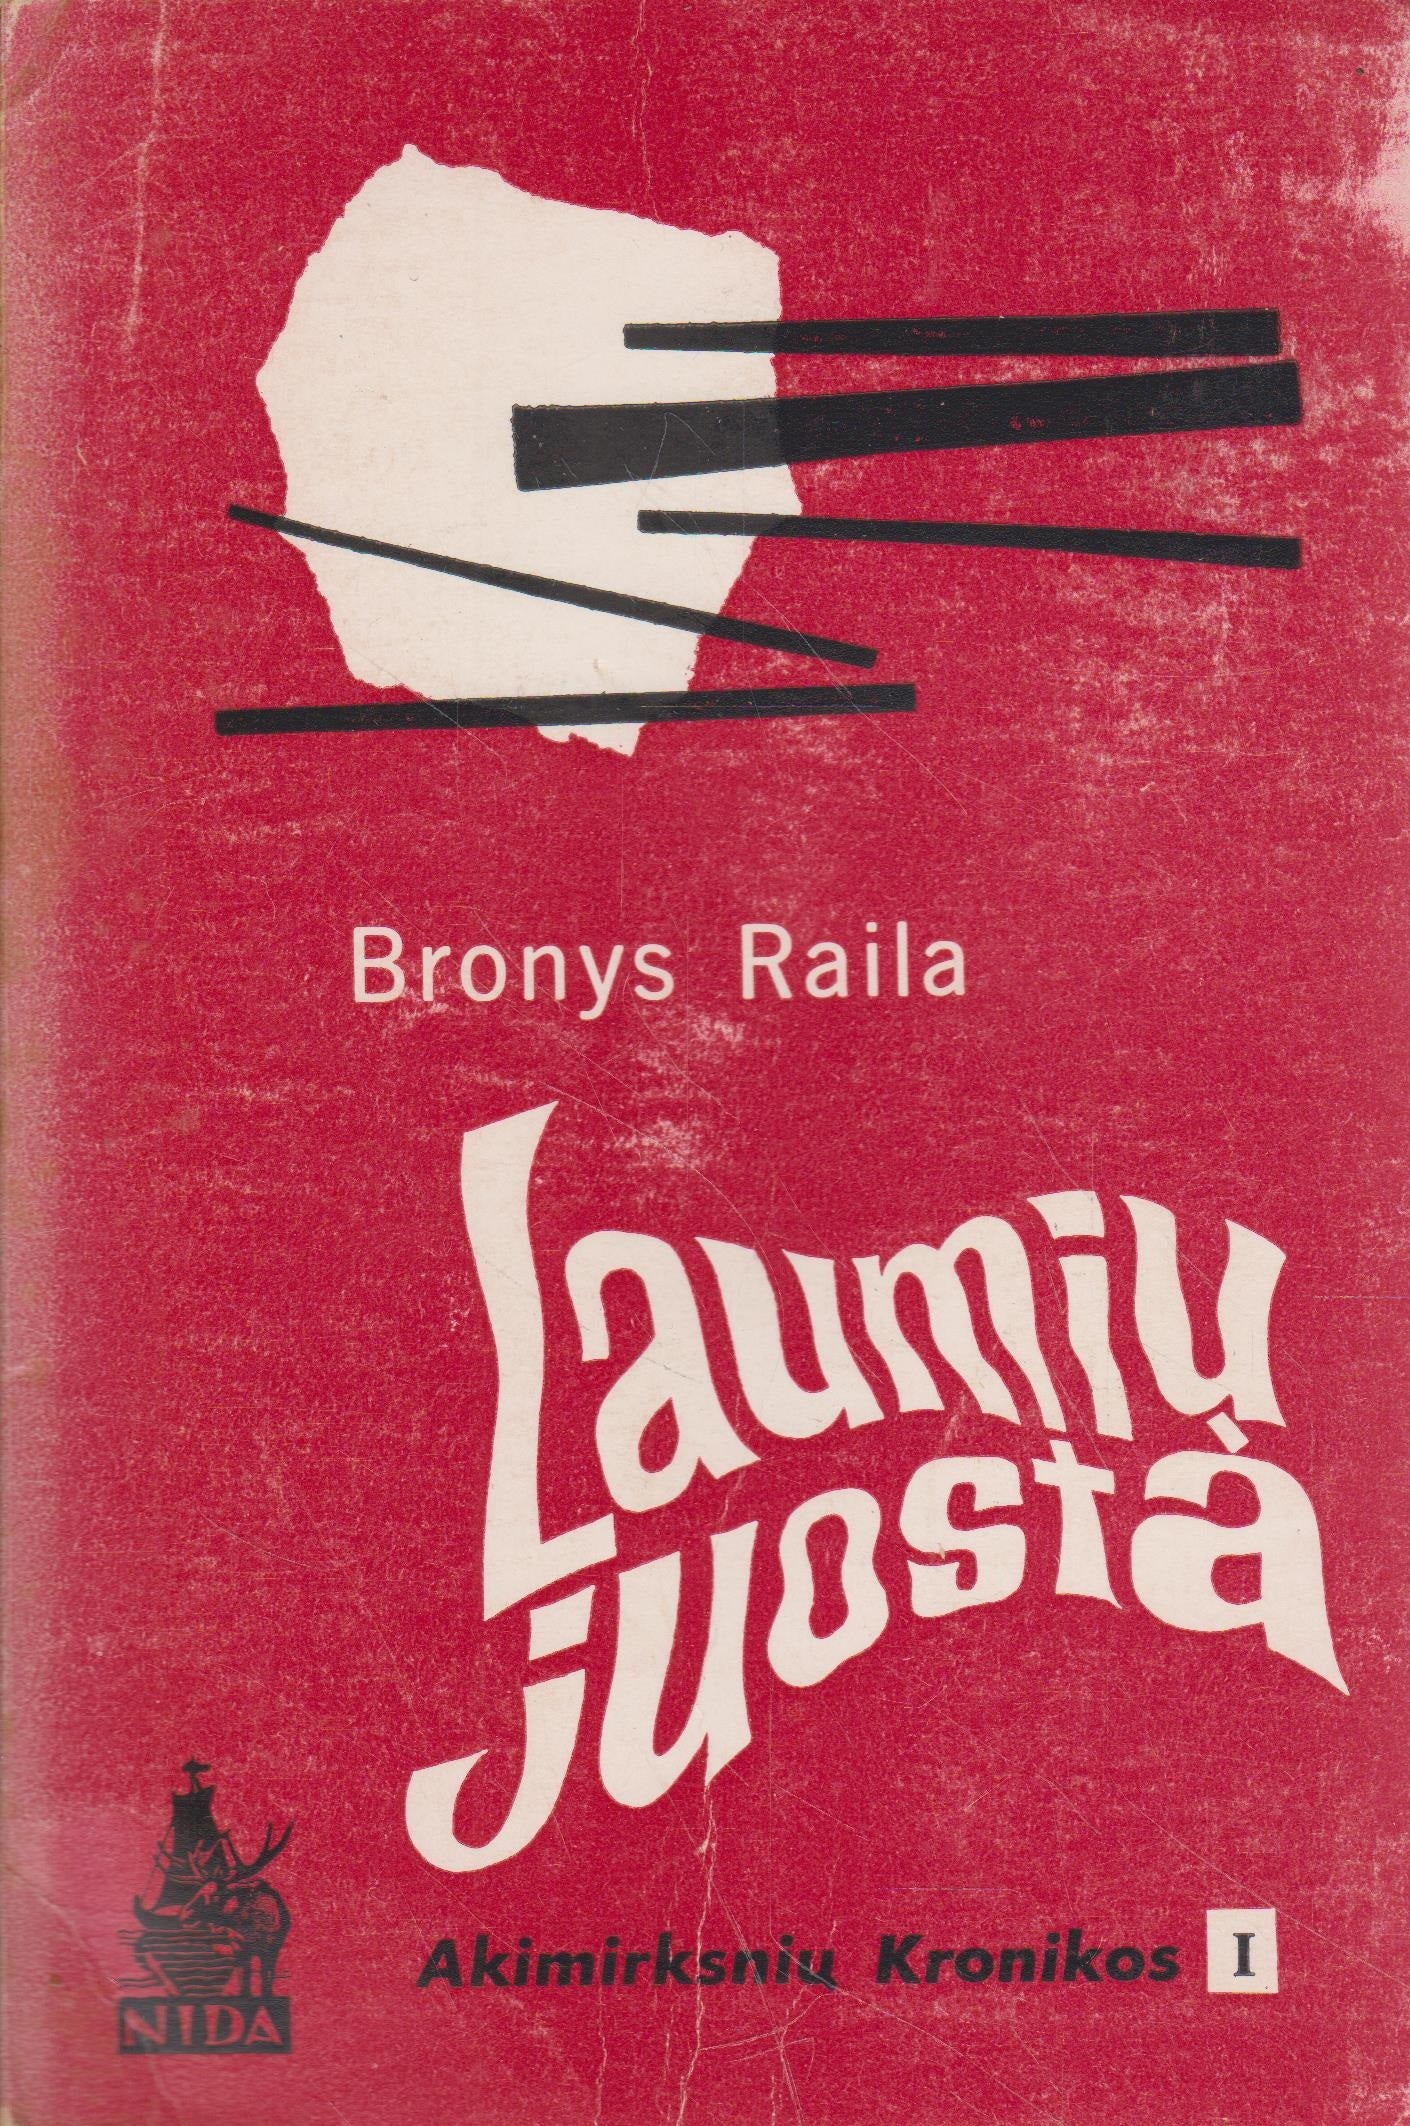 B. Raila - Laumių juosta, 1966, London (žr. būklę)